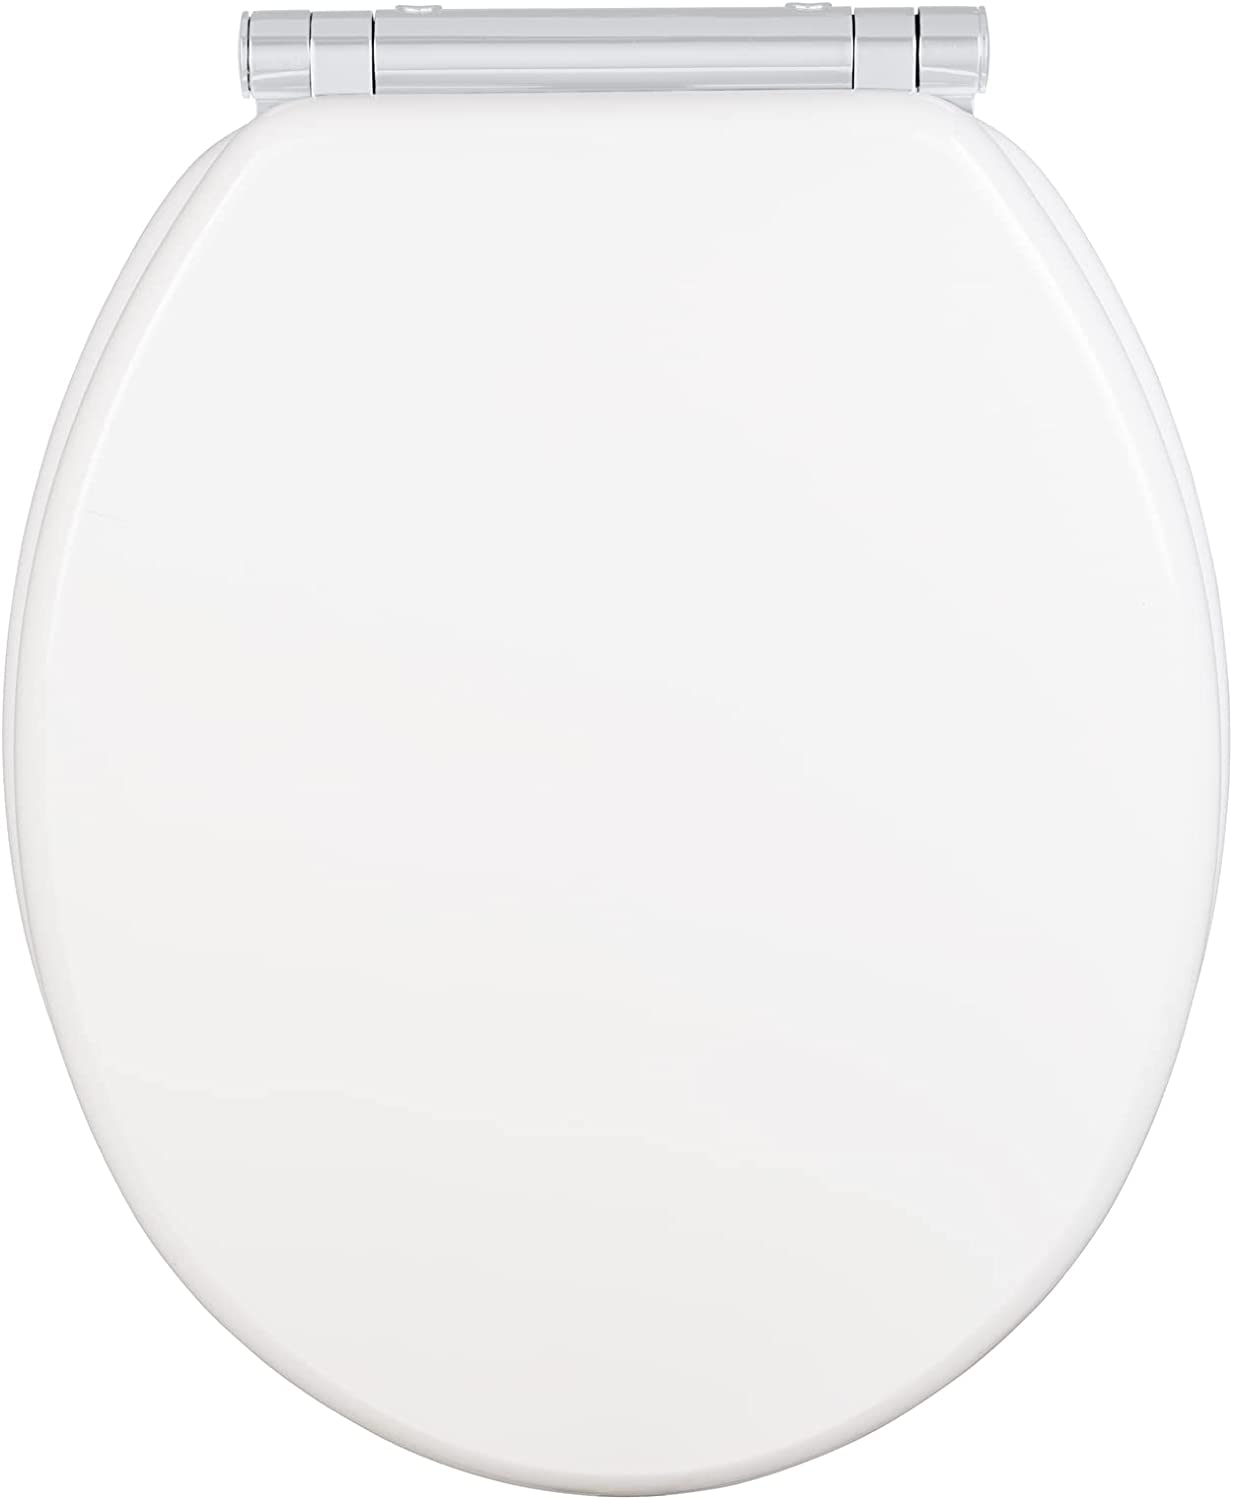 WC-Sitz Morra, Toilettensitz mit durchgehendem Scharnier und Absenkautomatik aus mehrfach lackiertem FSC®-zertifiziertem MDF, WC-Deckel mit Fix-Clip Hygienebefestigung, 35 x 42 cm, Weiß glänzend